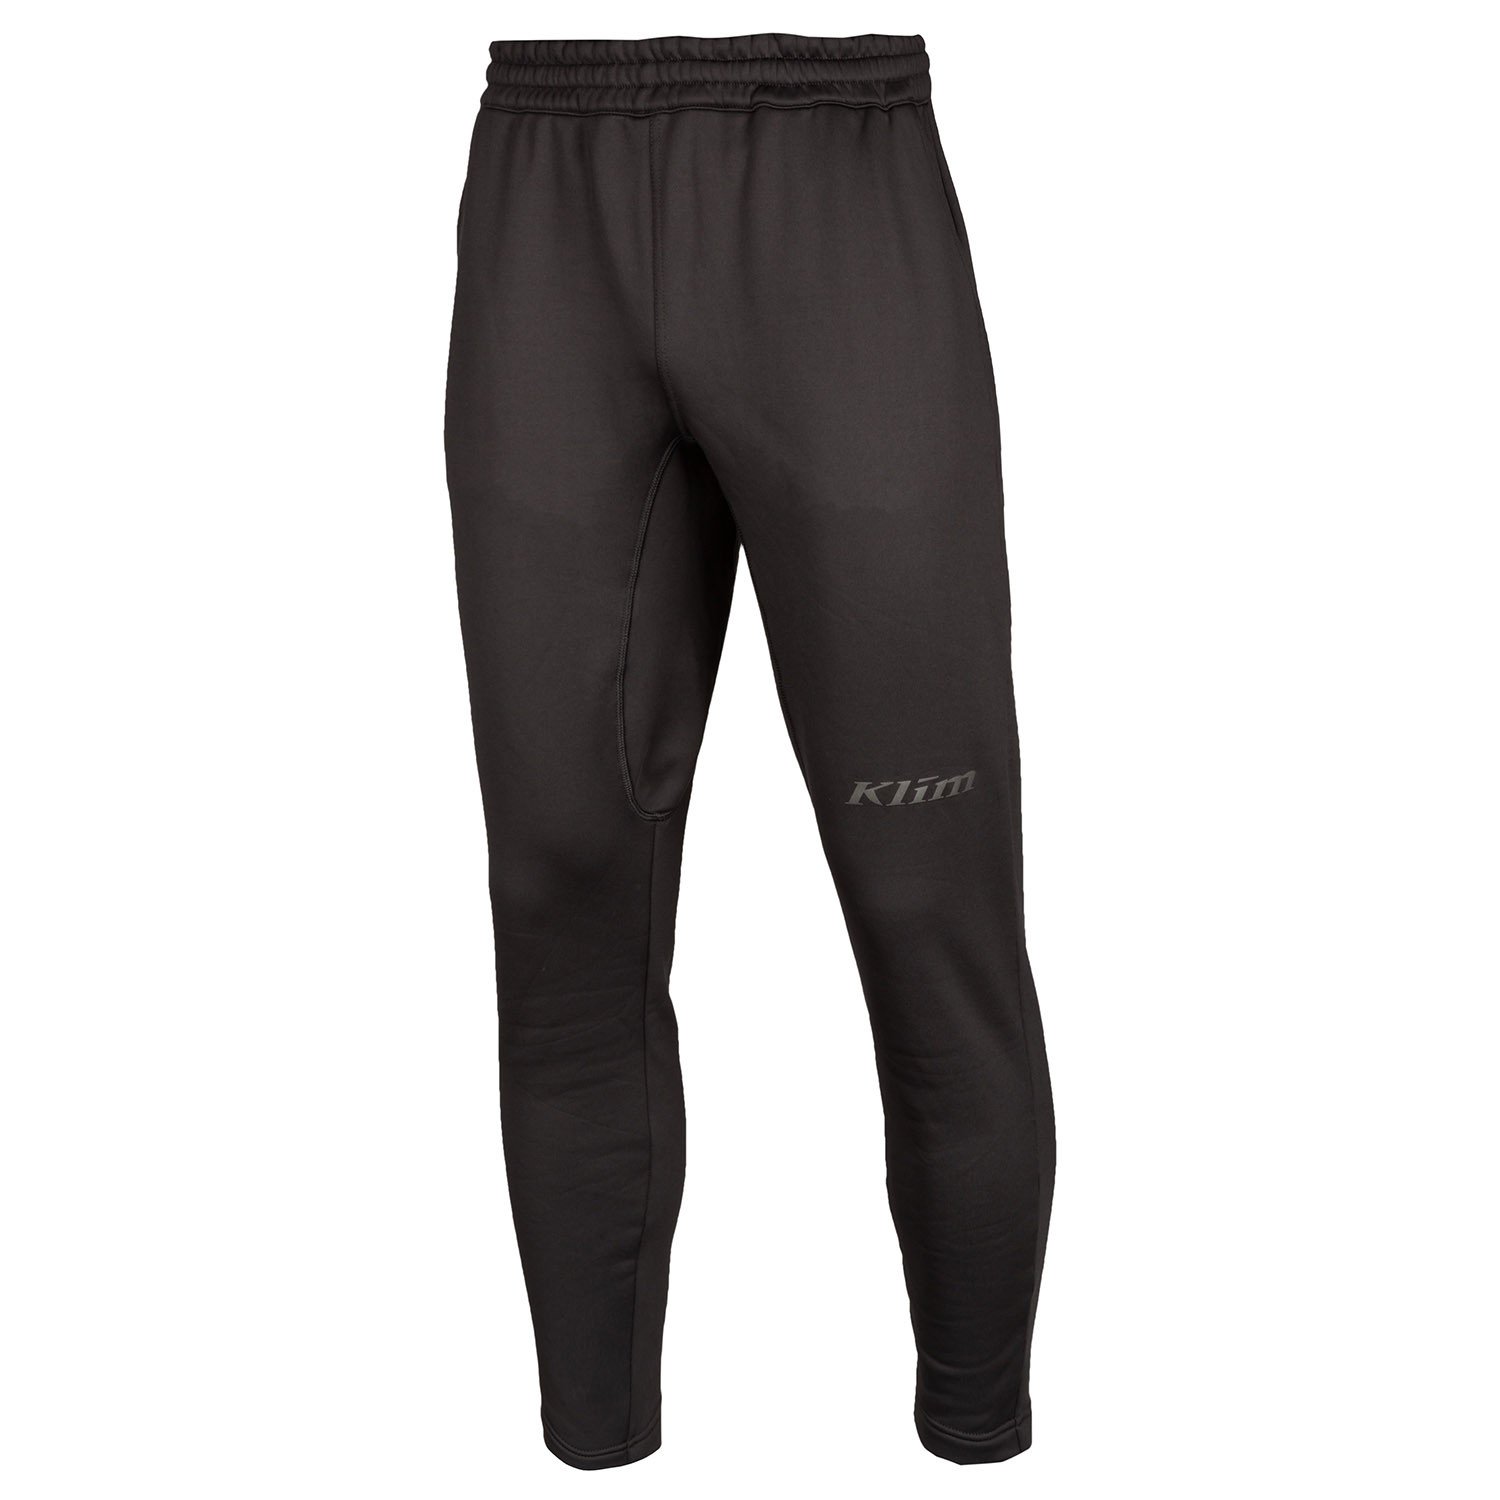 Image of Klim Inferno Jogger Pants Black - Asphalt Size 2XL EN